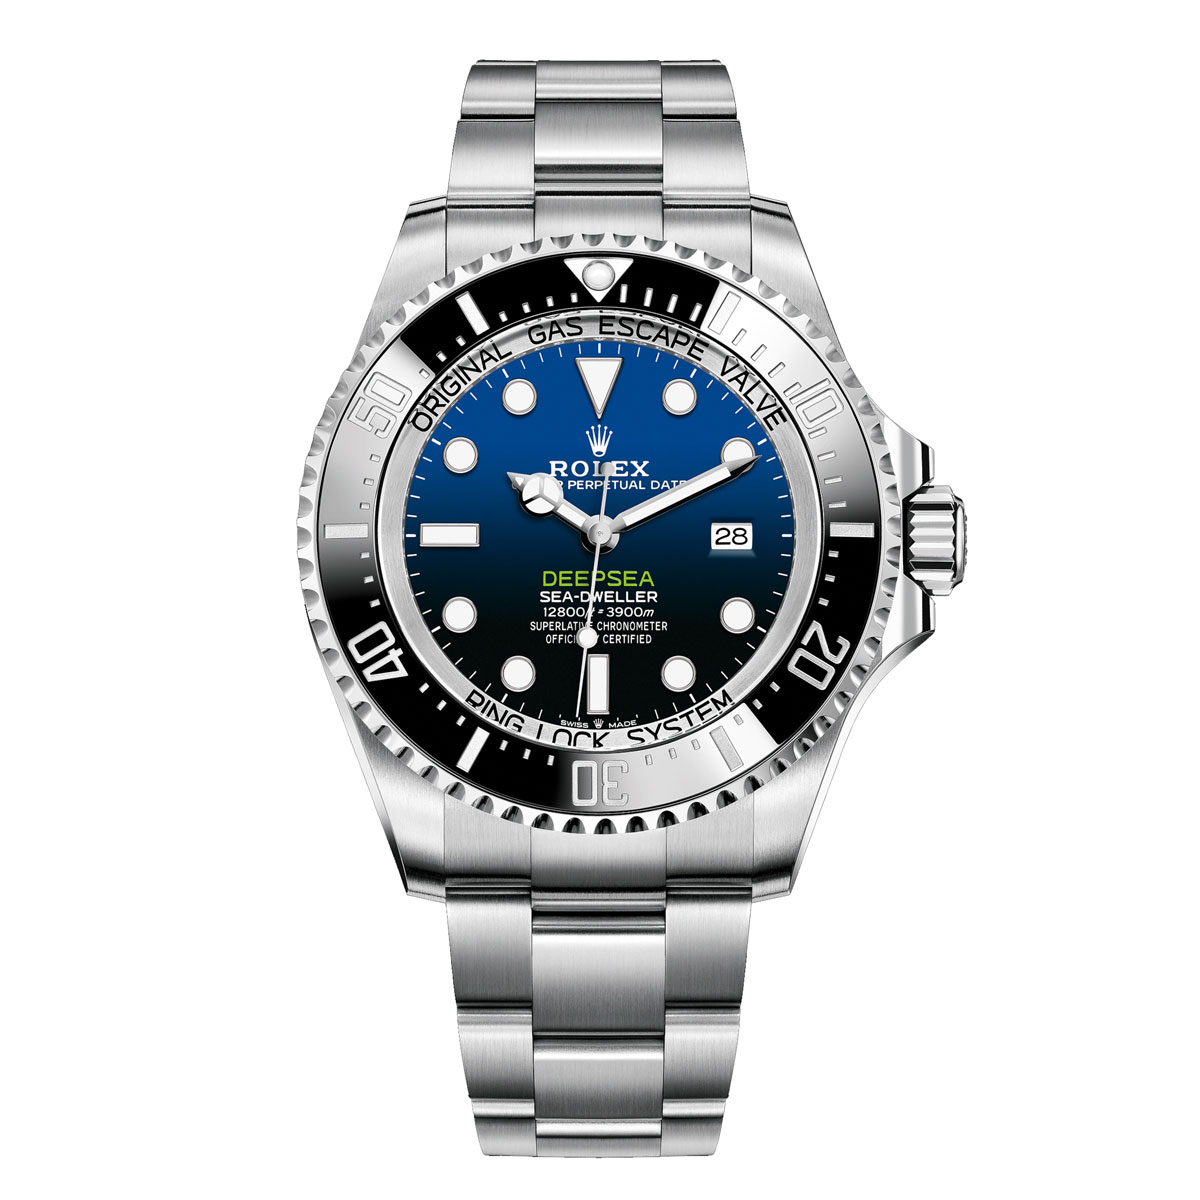 Rolex Deep Sea Super Clone Watches